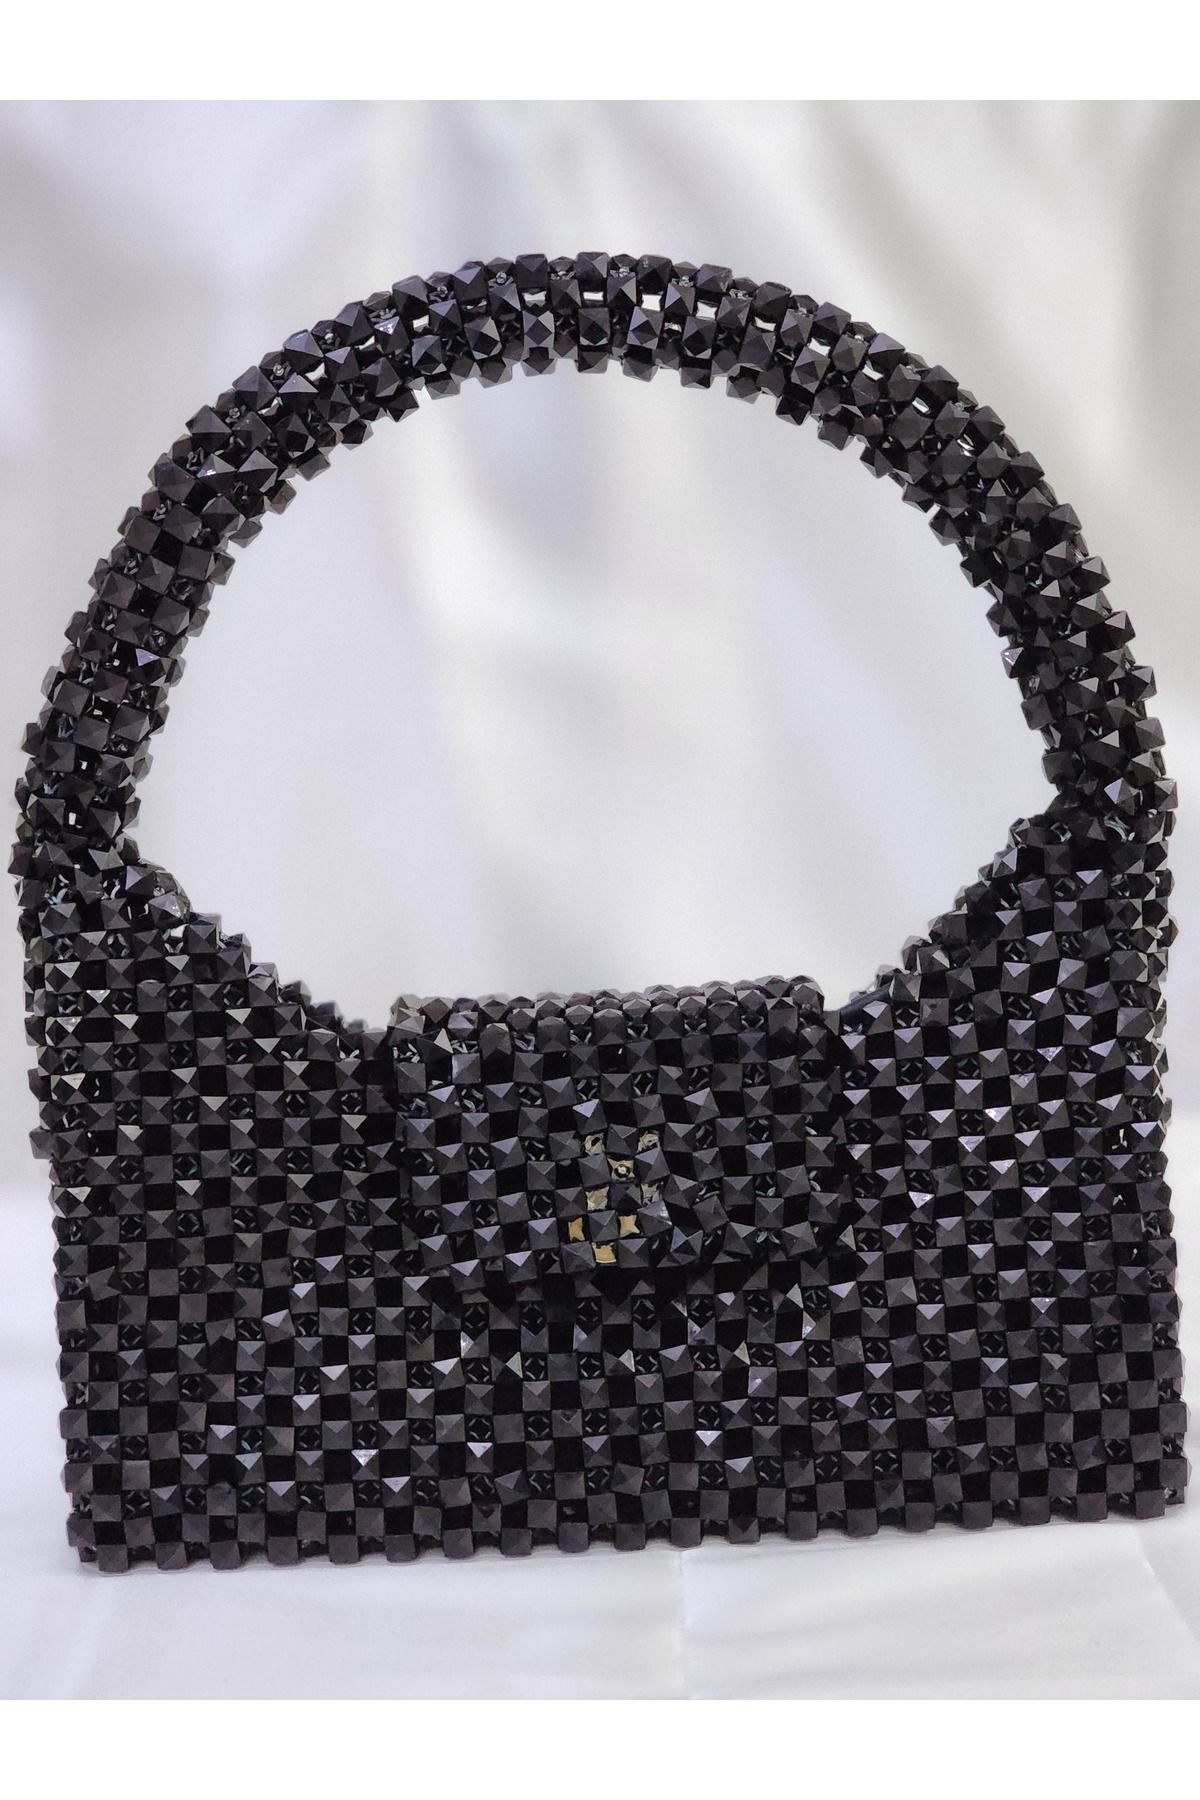 sirius art design Siyah Kristal Boncuk Çanta- Büyük Boy Davet Çantası- Içi Astarlı Çanta